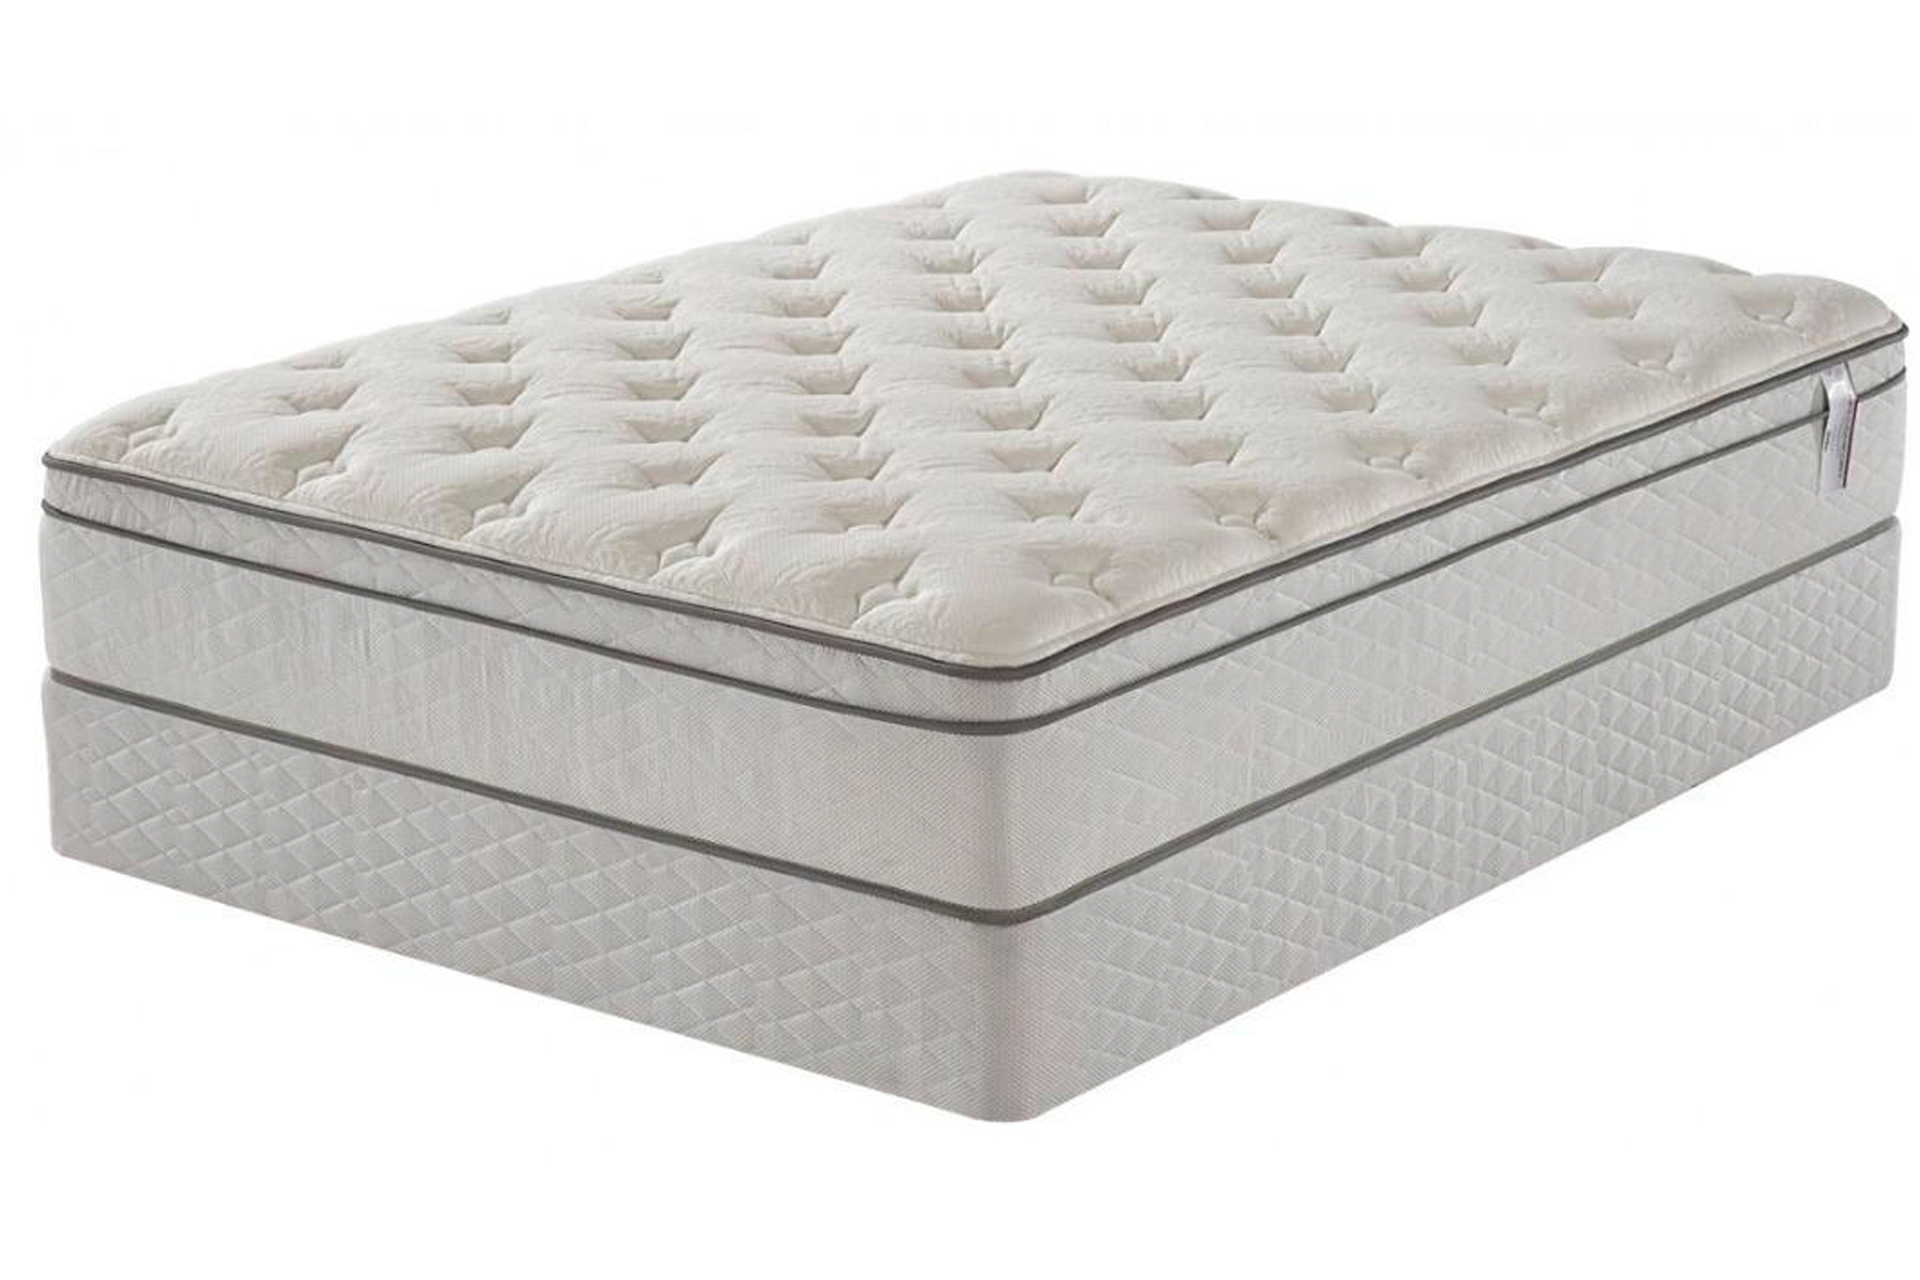 queen size pillow top mattress pad at walmart